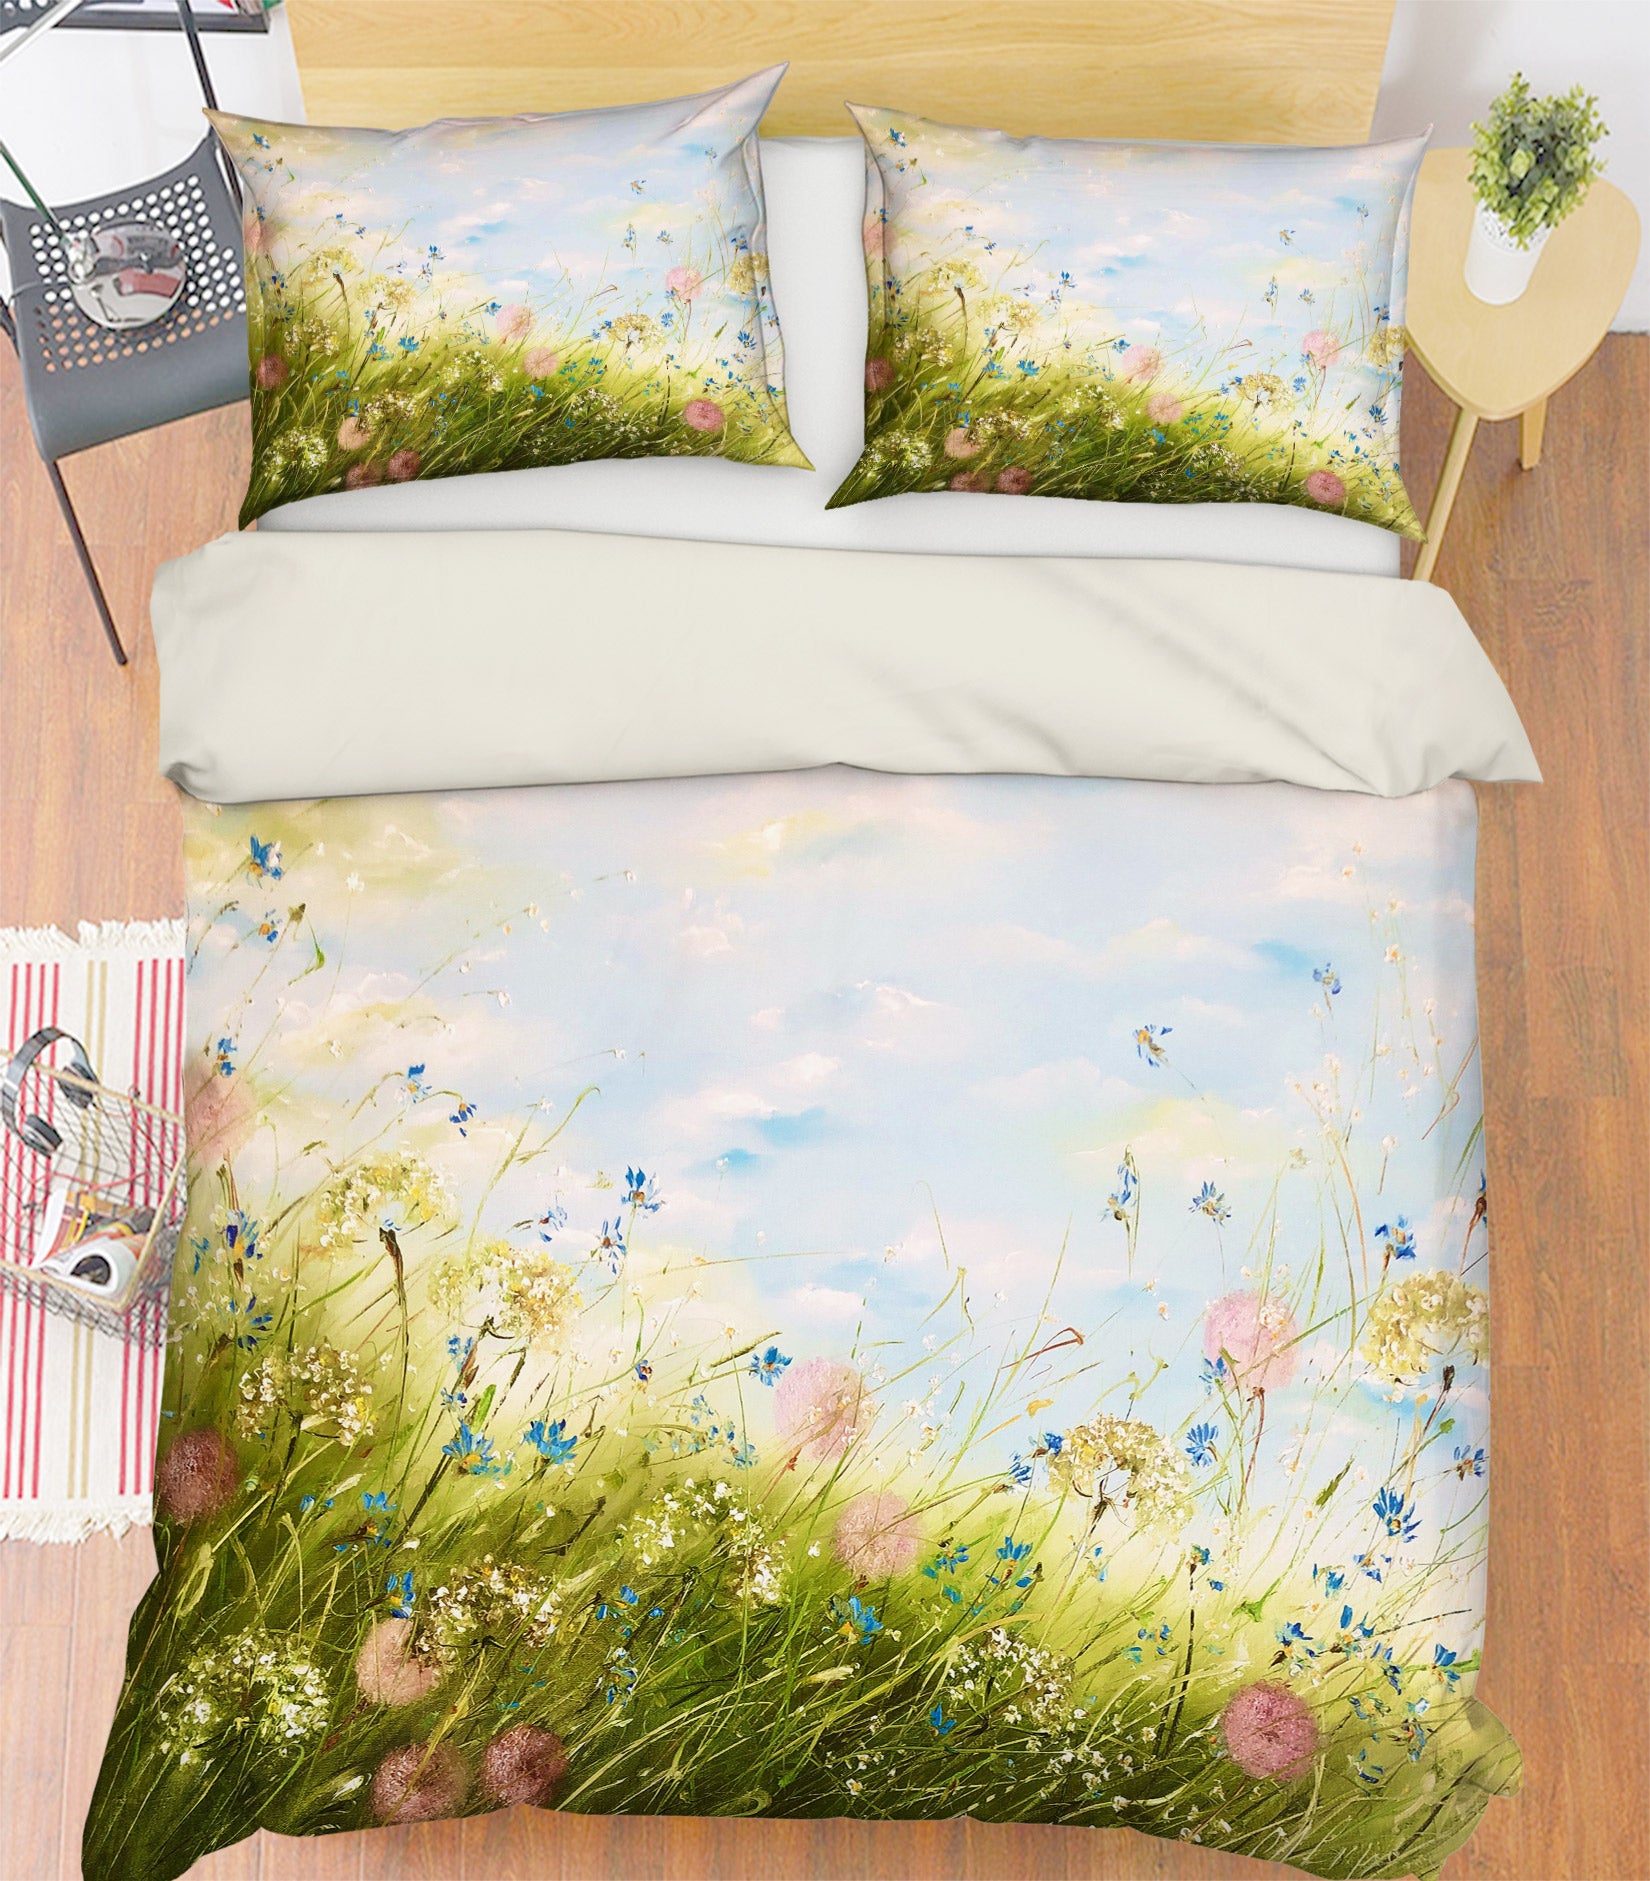 3D Grass Wildflowers 505 Skromova Marina Bedding Bed Pillowcases Quilt